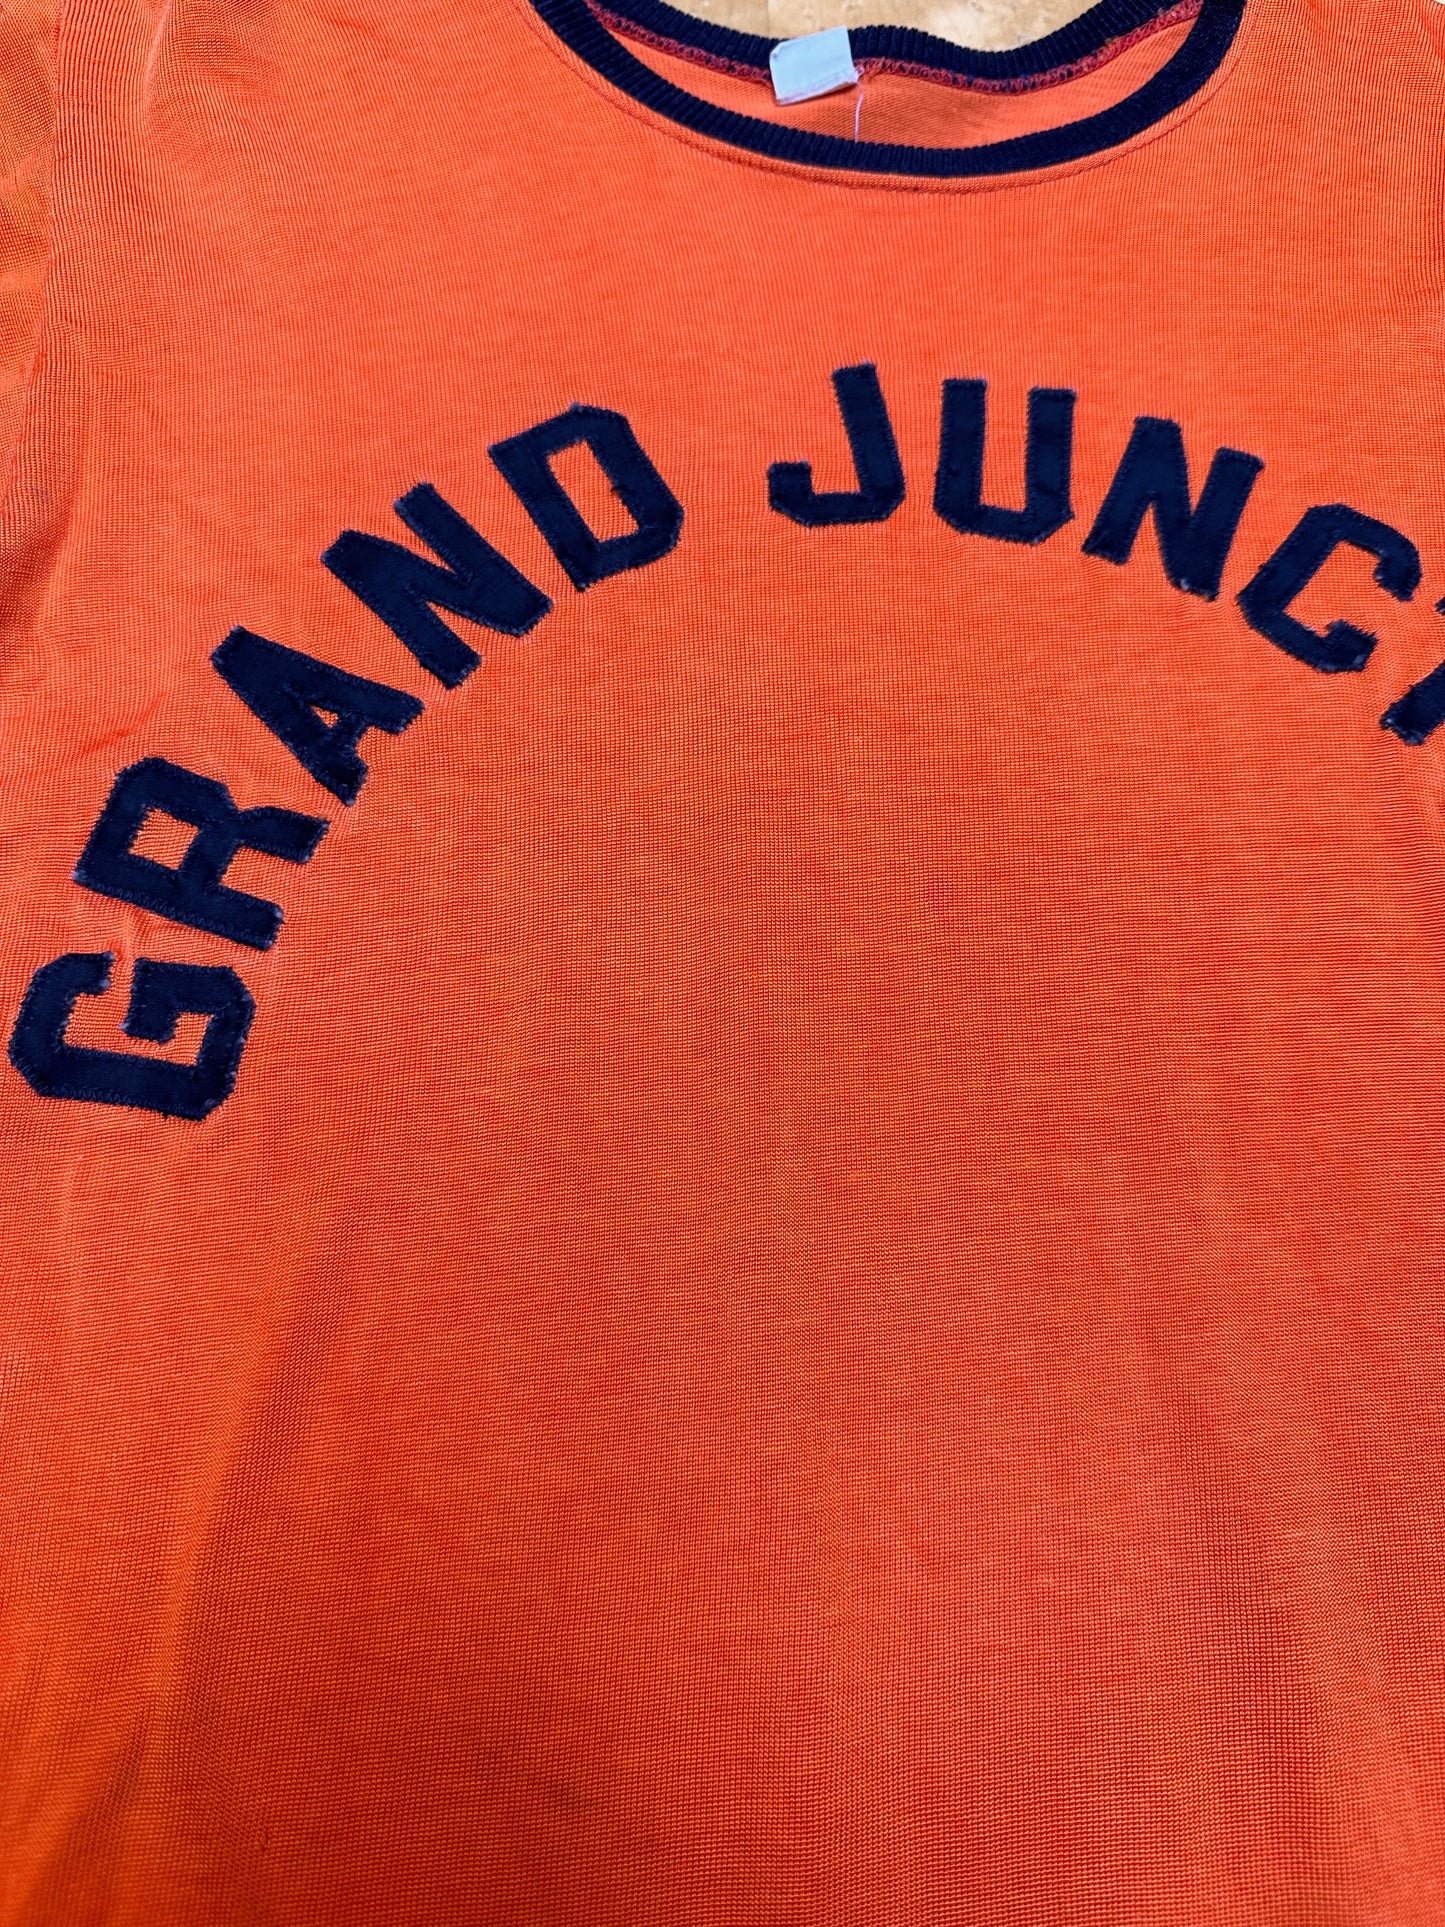 Grand Junction #19 Jersey Shirt